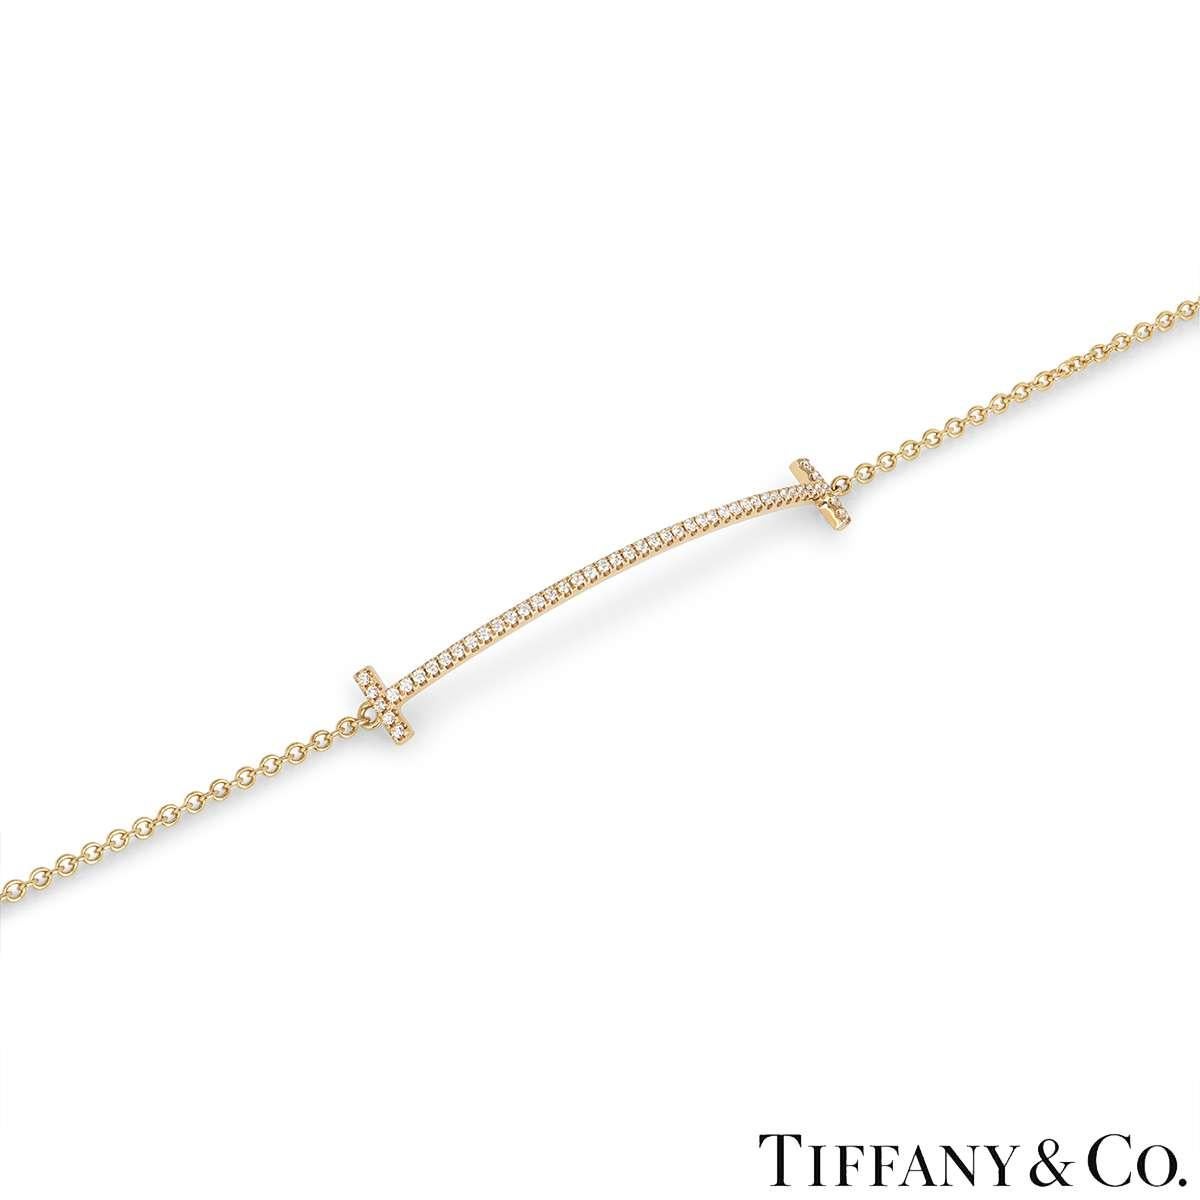 Ein zartes Diamantarmband aus 18 Karat Roségold von Tiffany & Co. aus der Tiffany T Collection. Das Armband besteht aus einem geschwungenen Design mit dem ikonischen Tiffany T an beiden Enden in der Mitte und schließt mit einer verstellbaren Kette